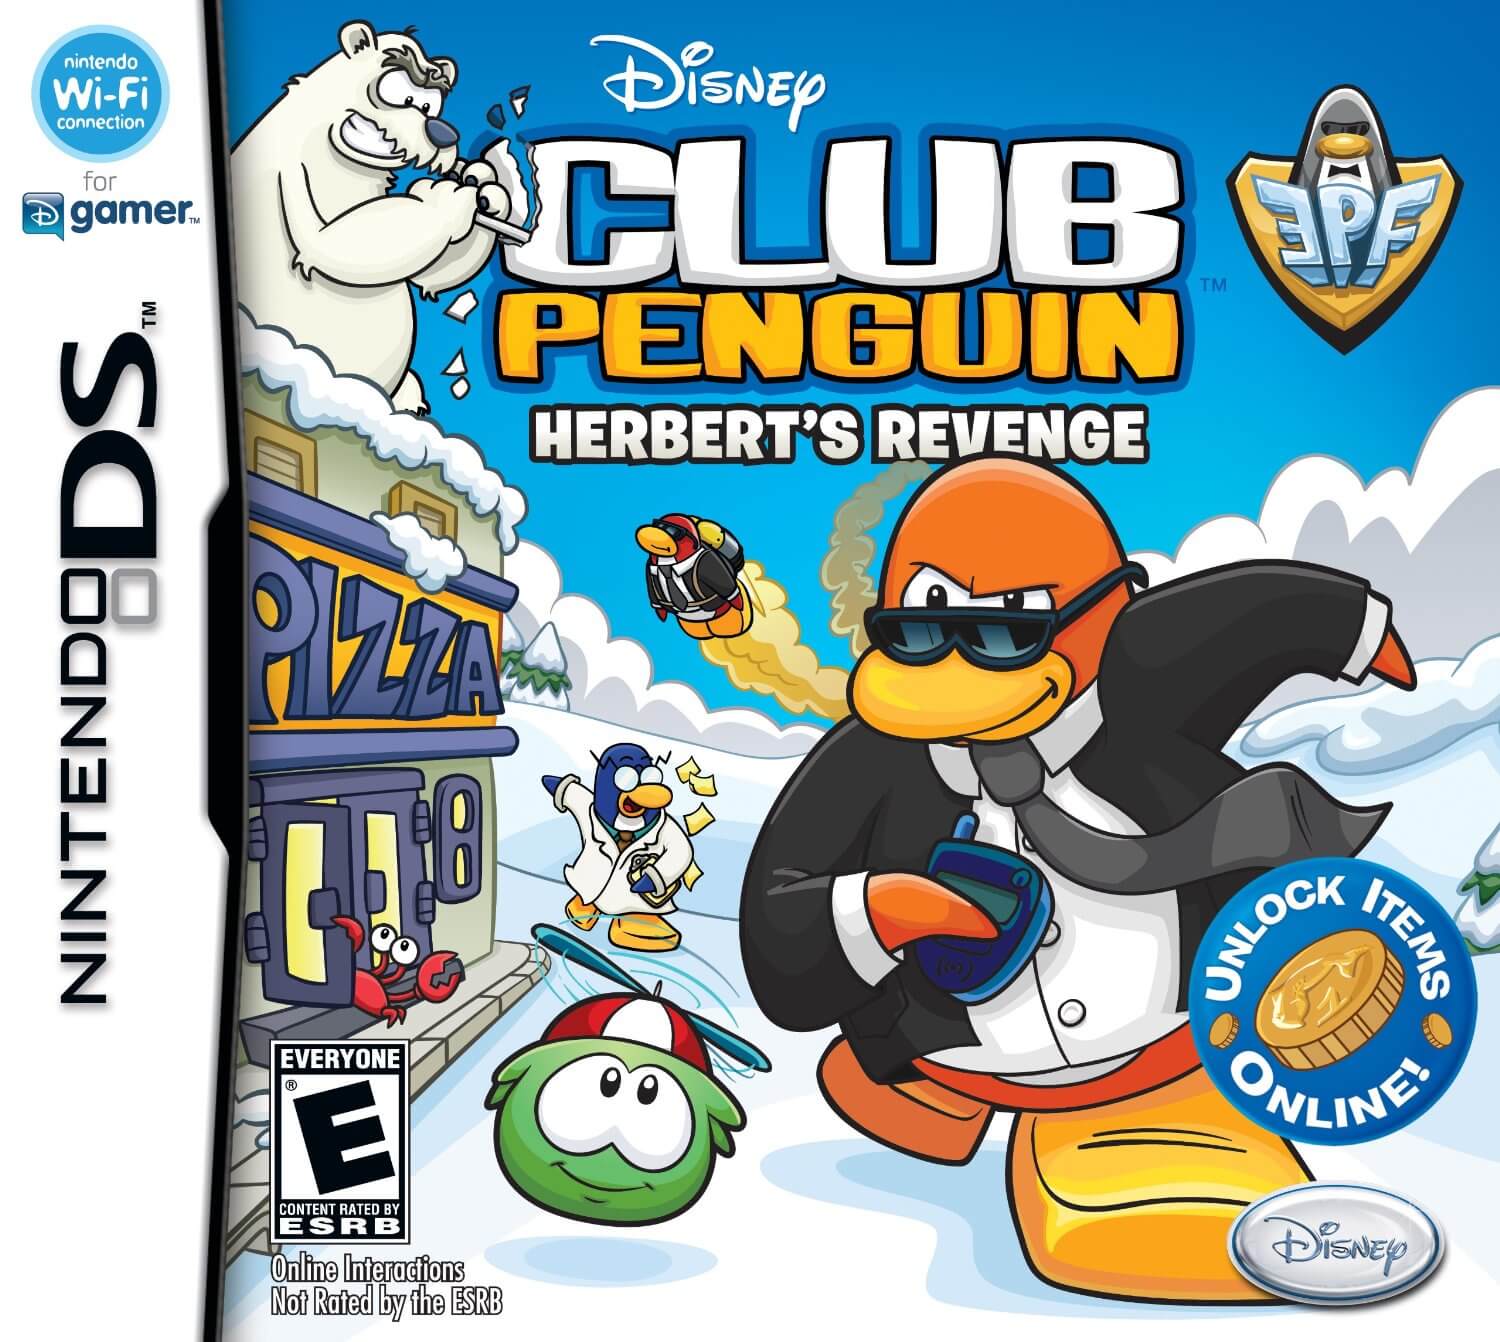 Penguin: Elite Penguin Force: Herbert's Revenge